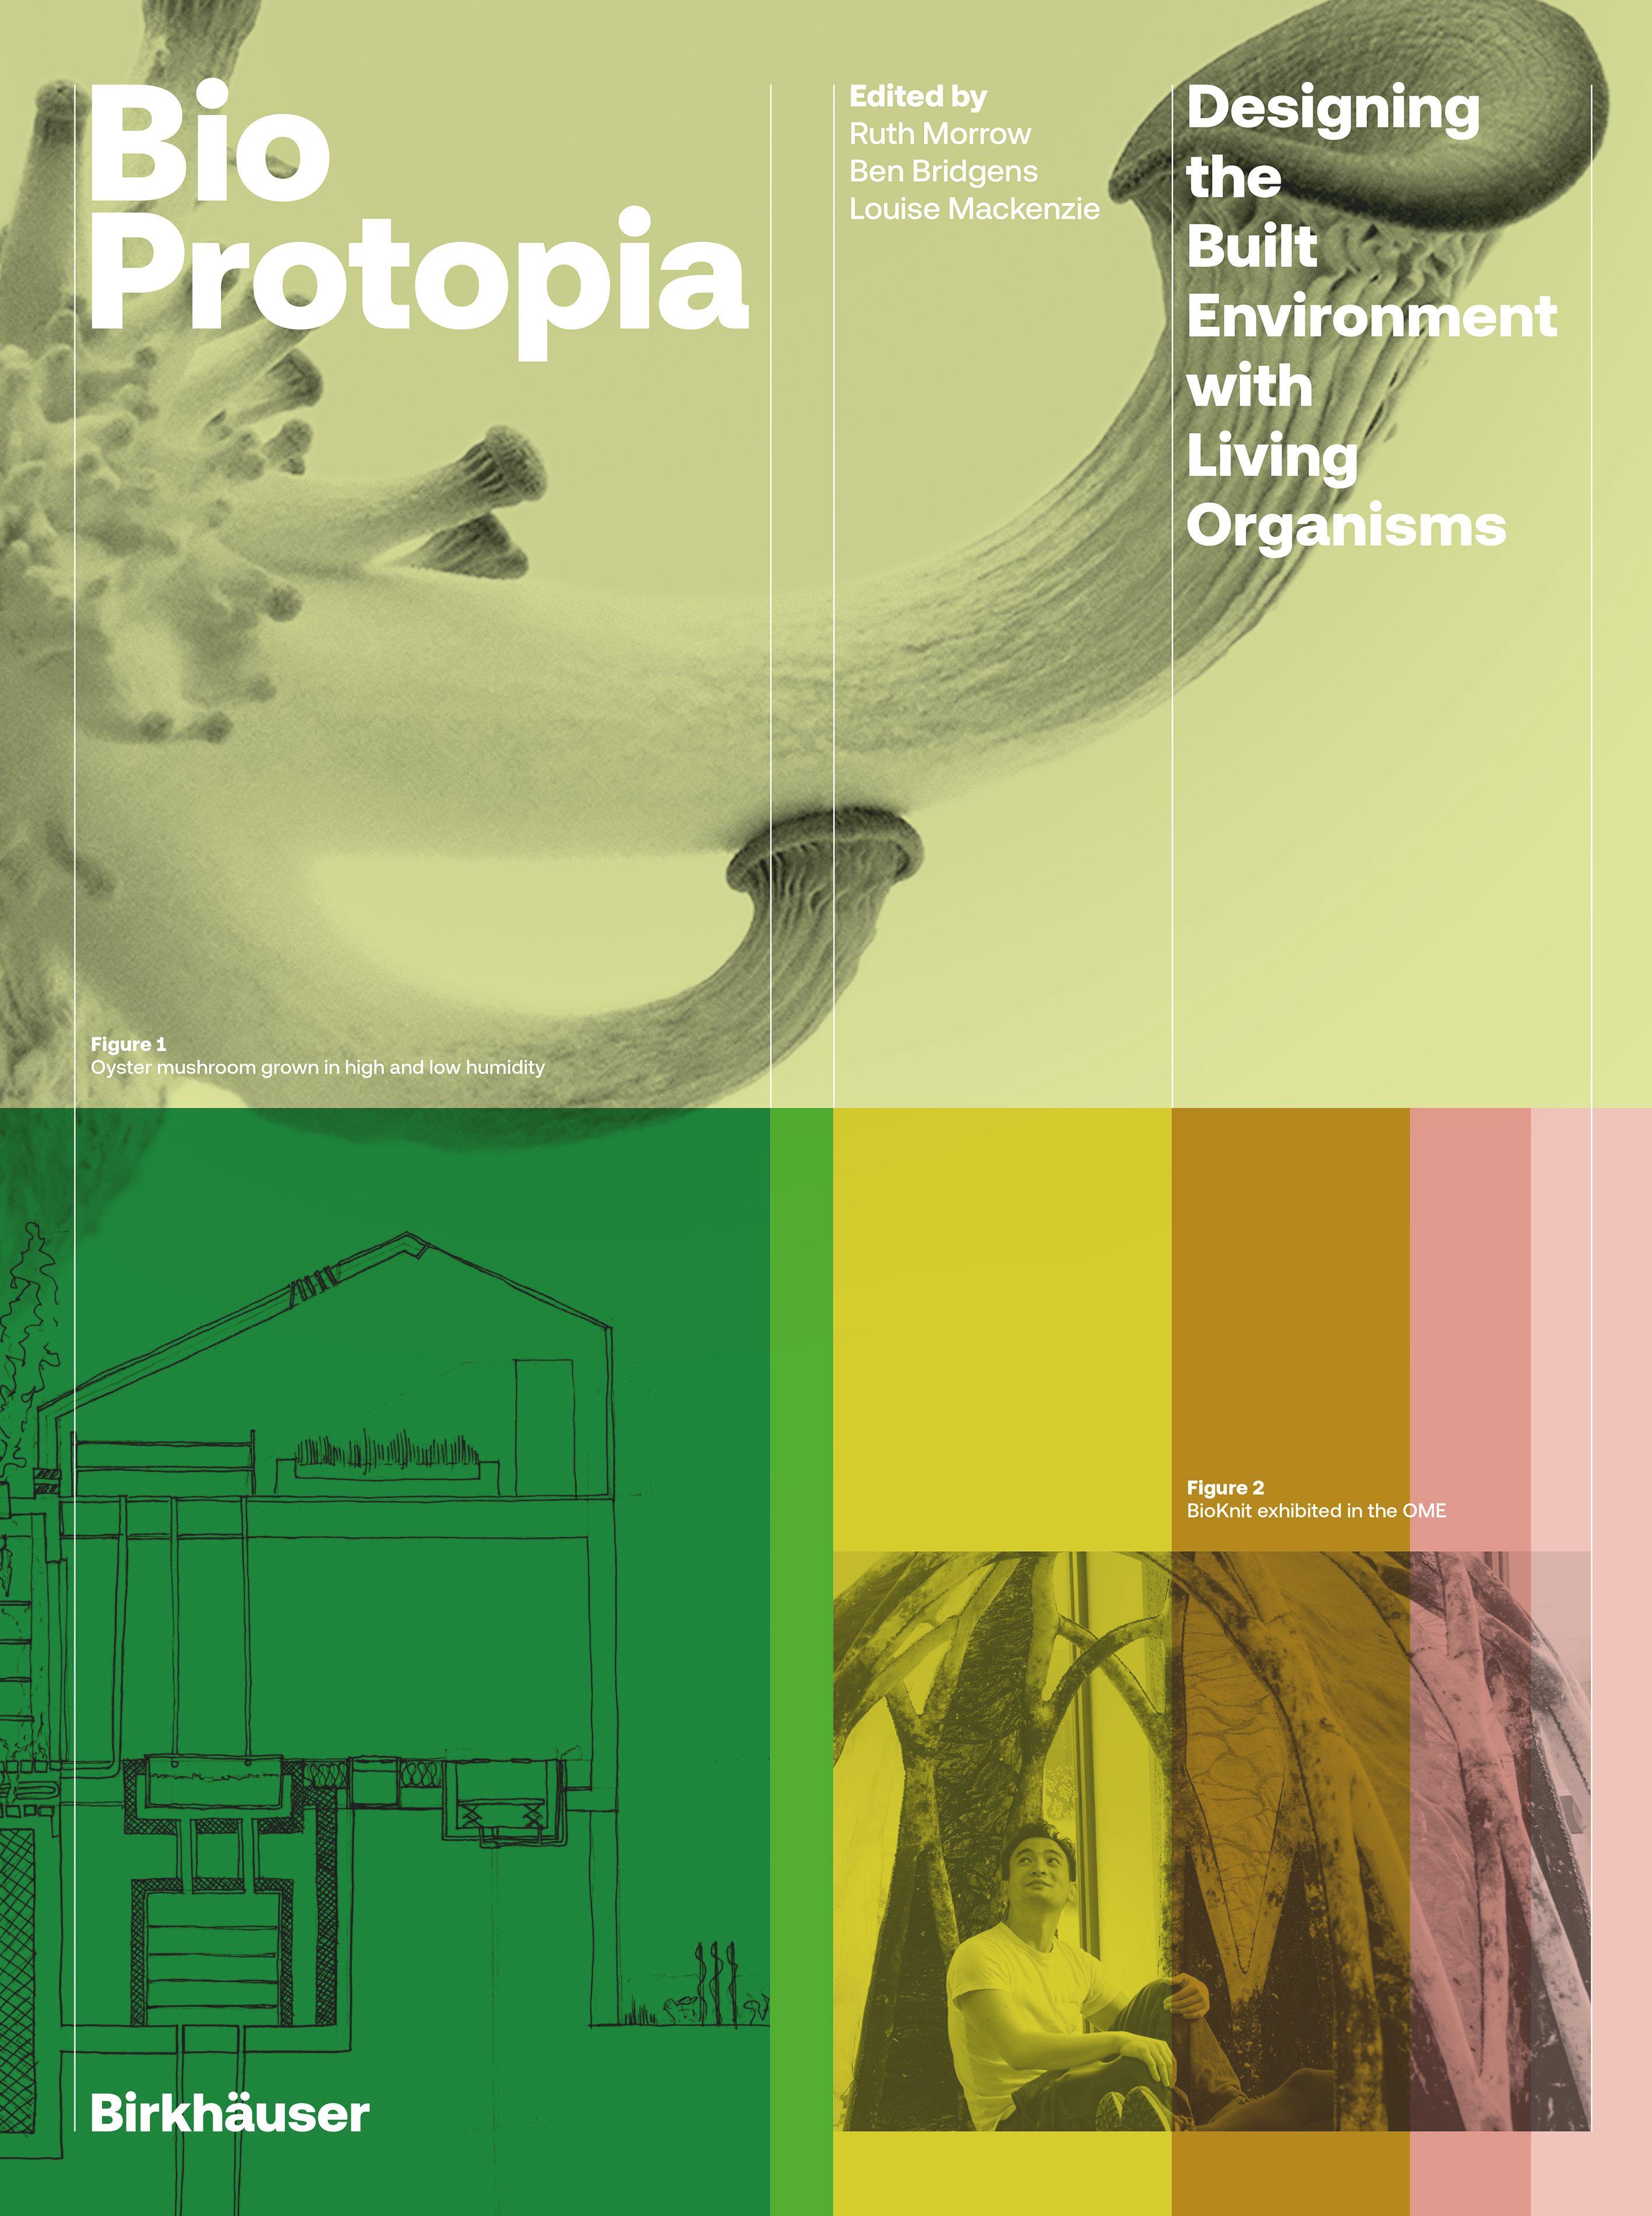 Bioprotopia's cover